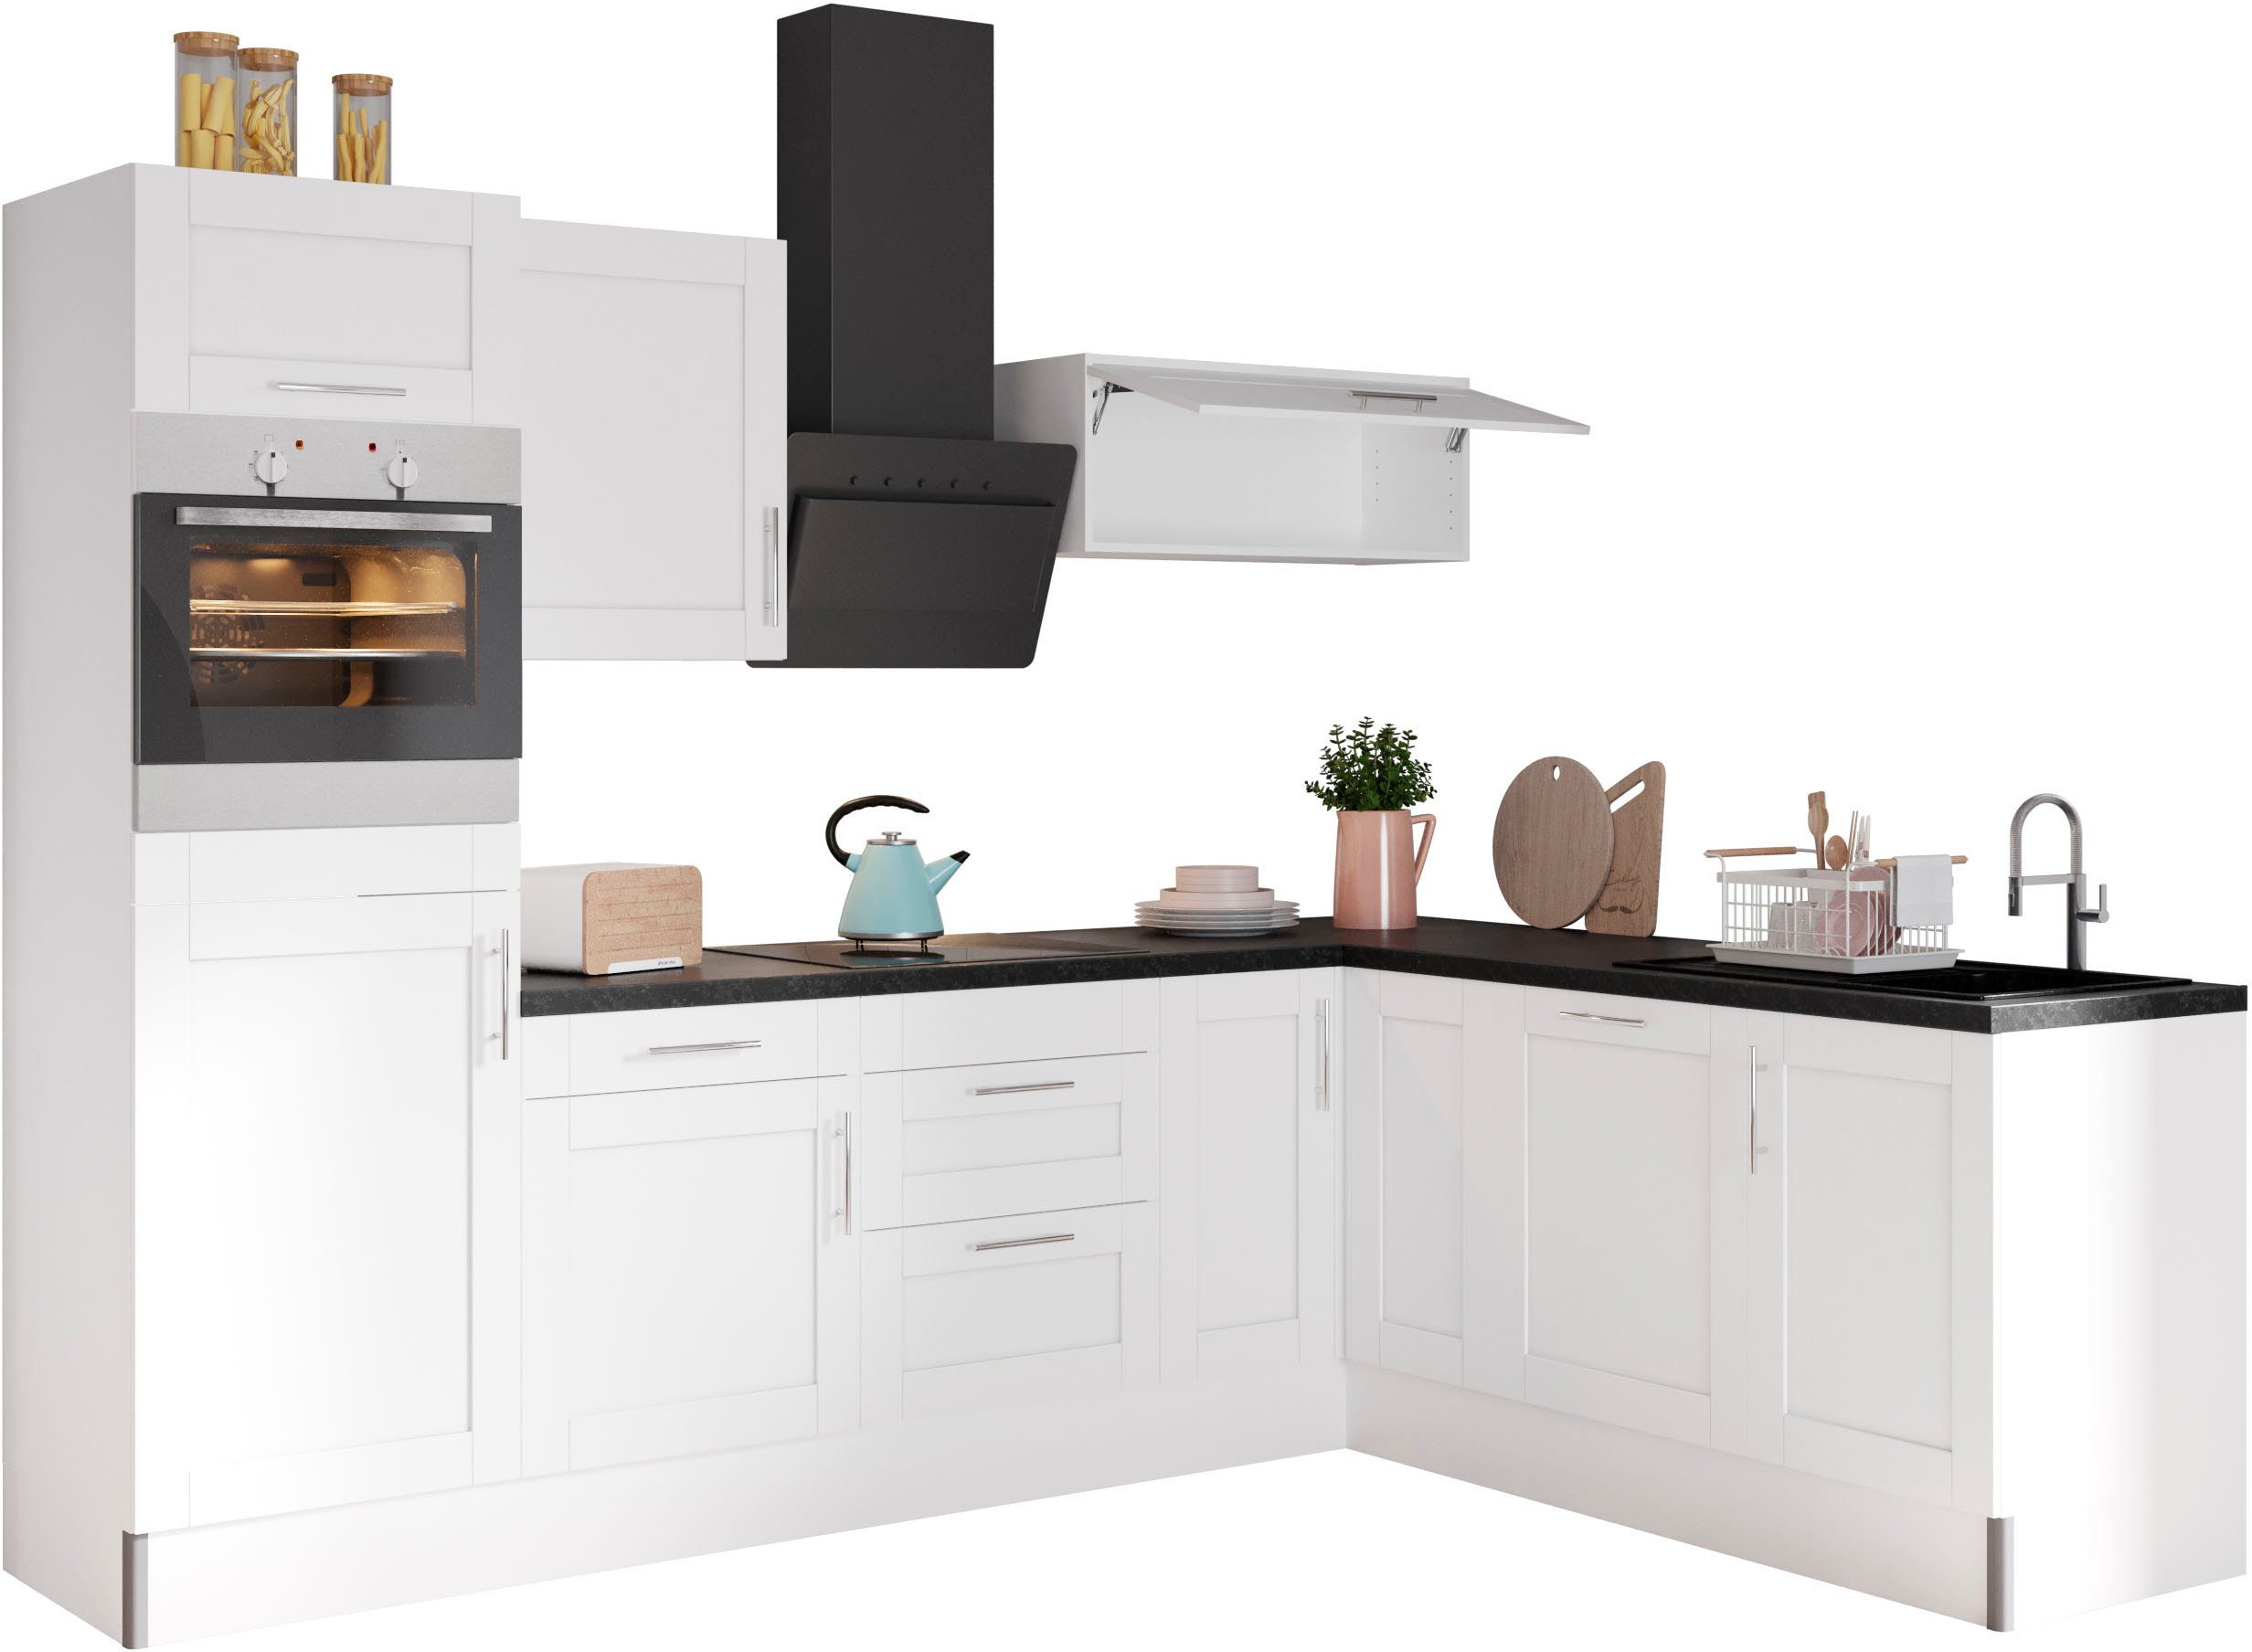 OPTIFIT Küche Ahus, 200 x 270 cm breit, ohne E-Geräte, Soft Close Funktion,  MDF Fronten, ohne E-Geräte, Empfehlung siehe Wissenswertes